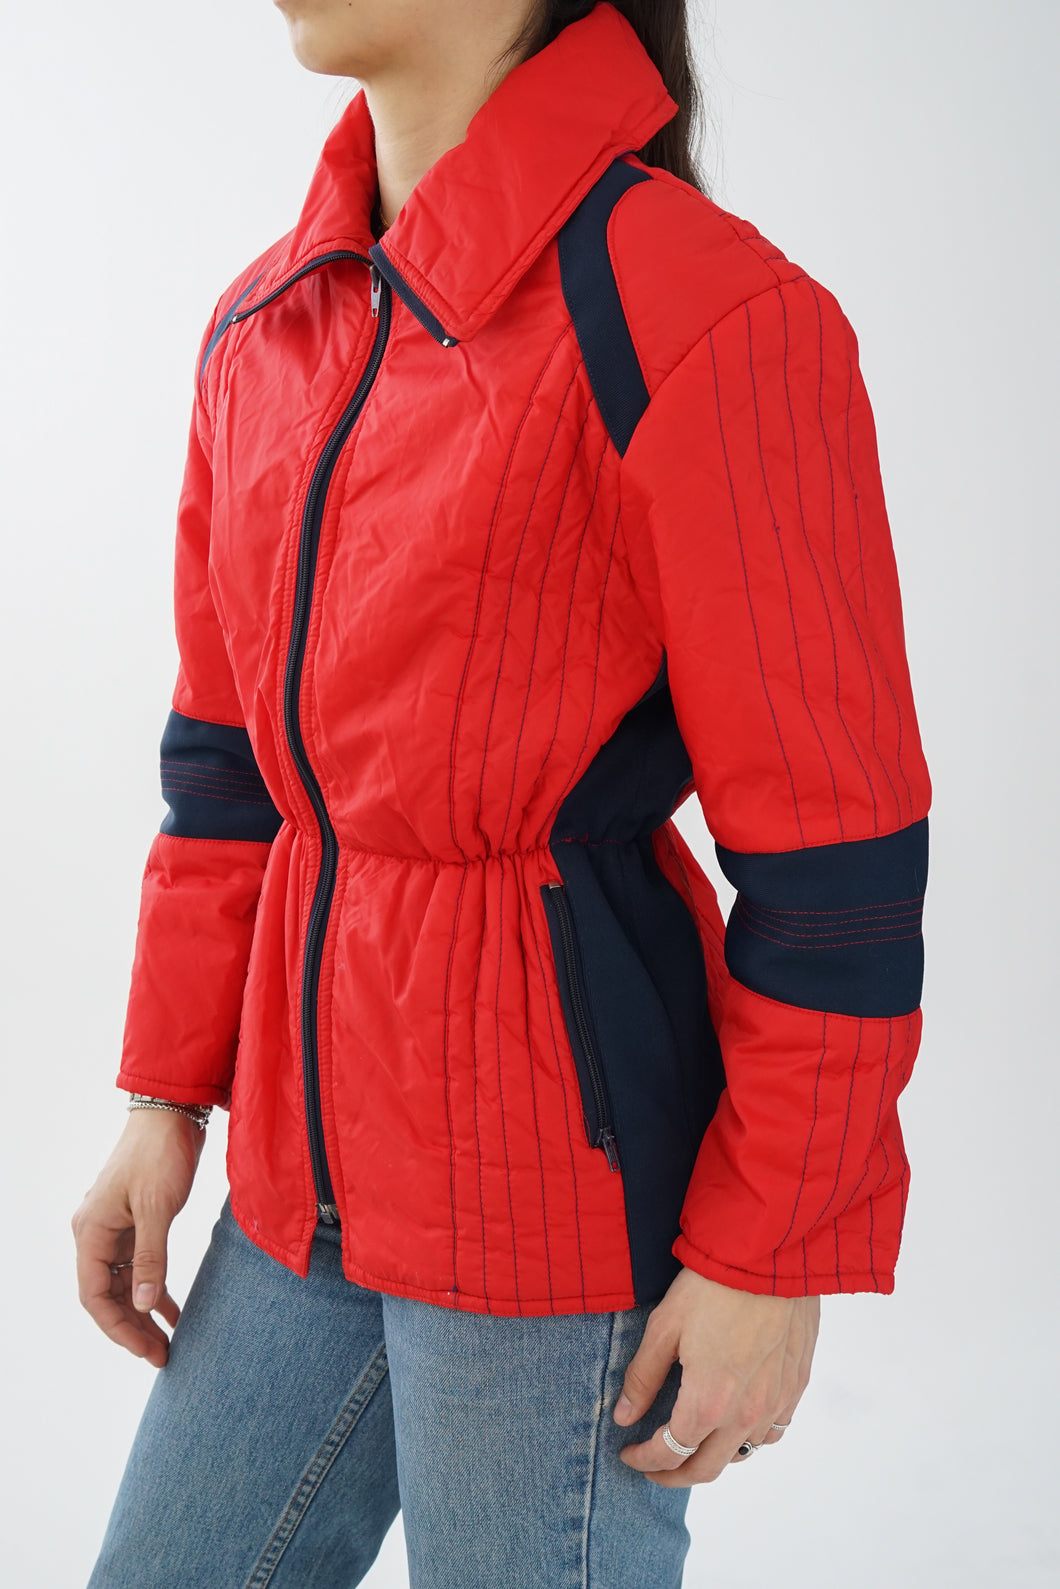 Manteau léger de ski vintage Jean Claude Killy pour femme taille S